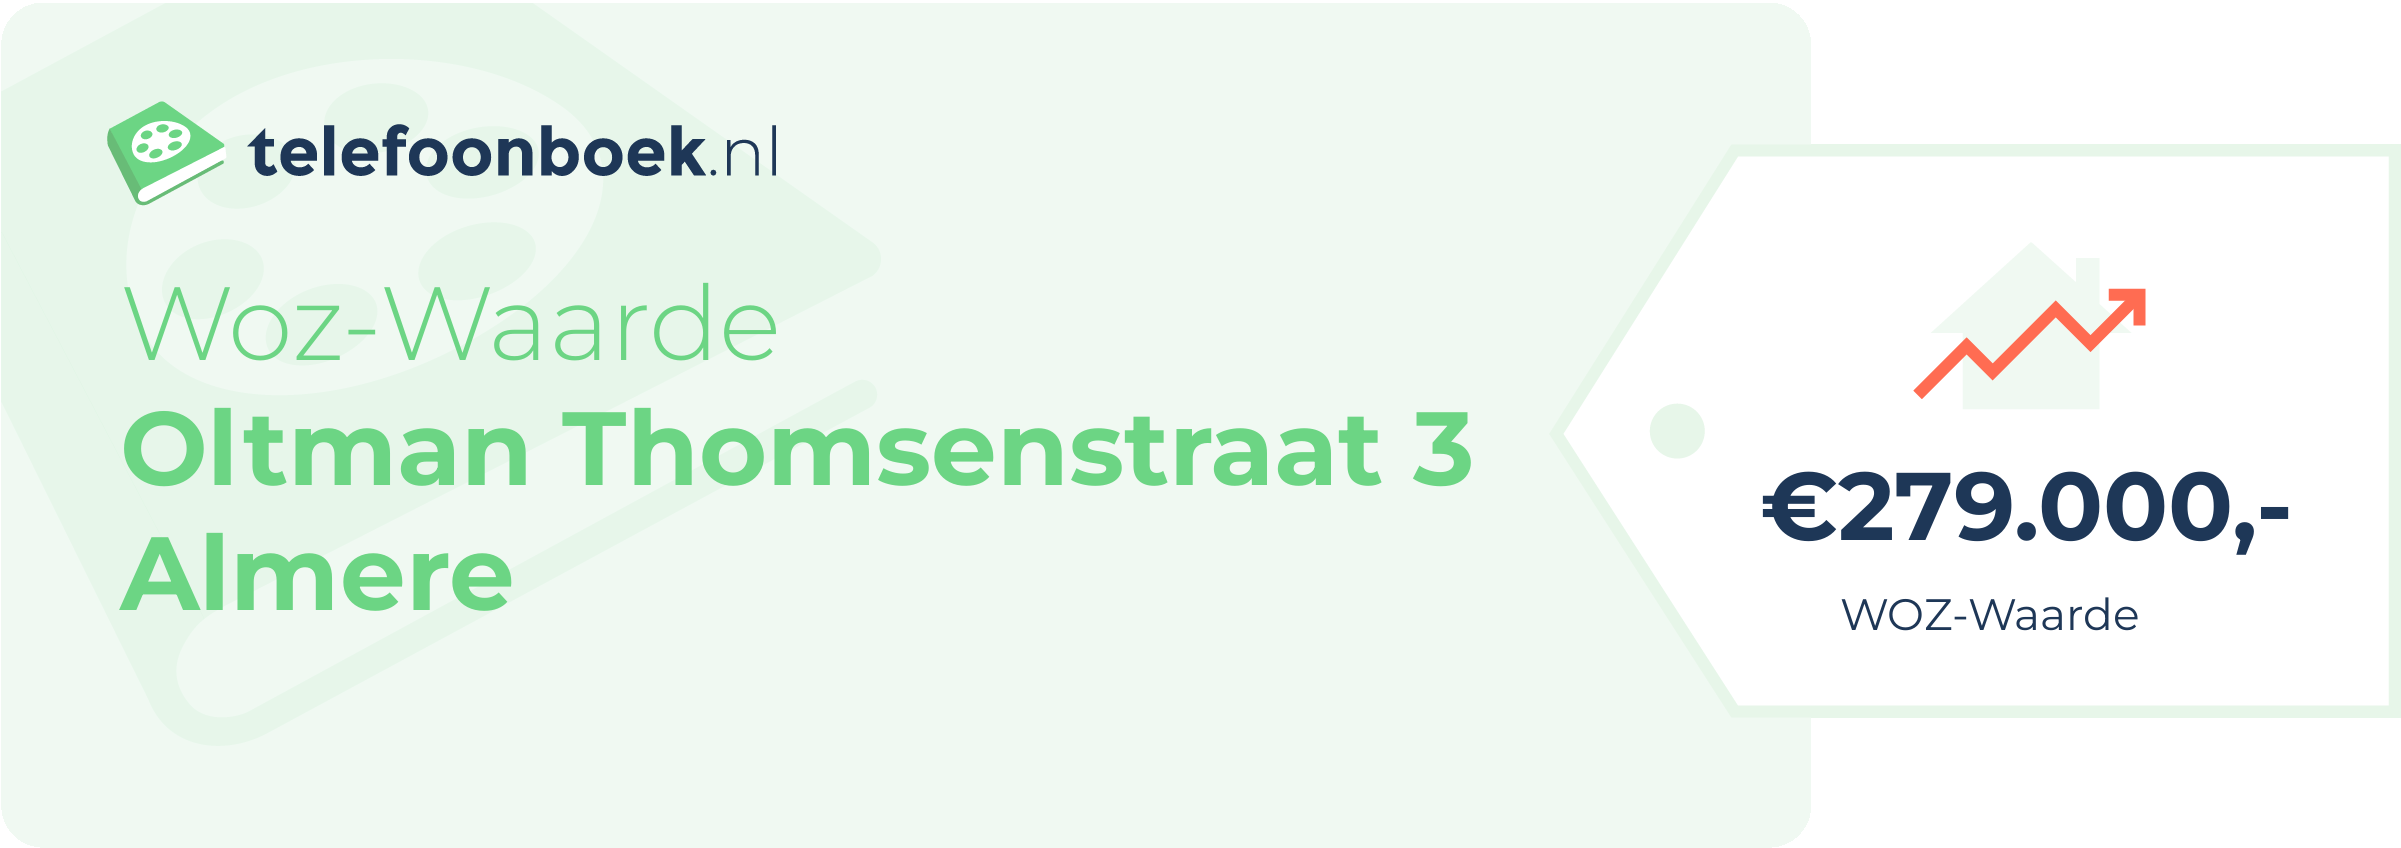 WOZ-waarde Oltman Thomsenstraat 3 Almere